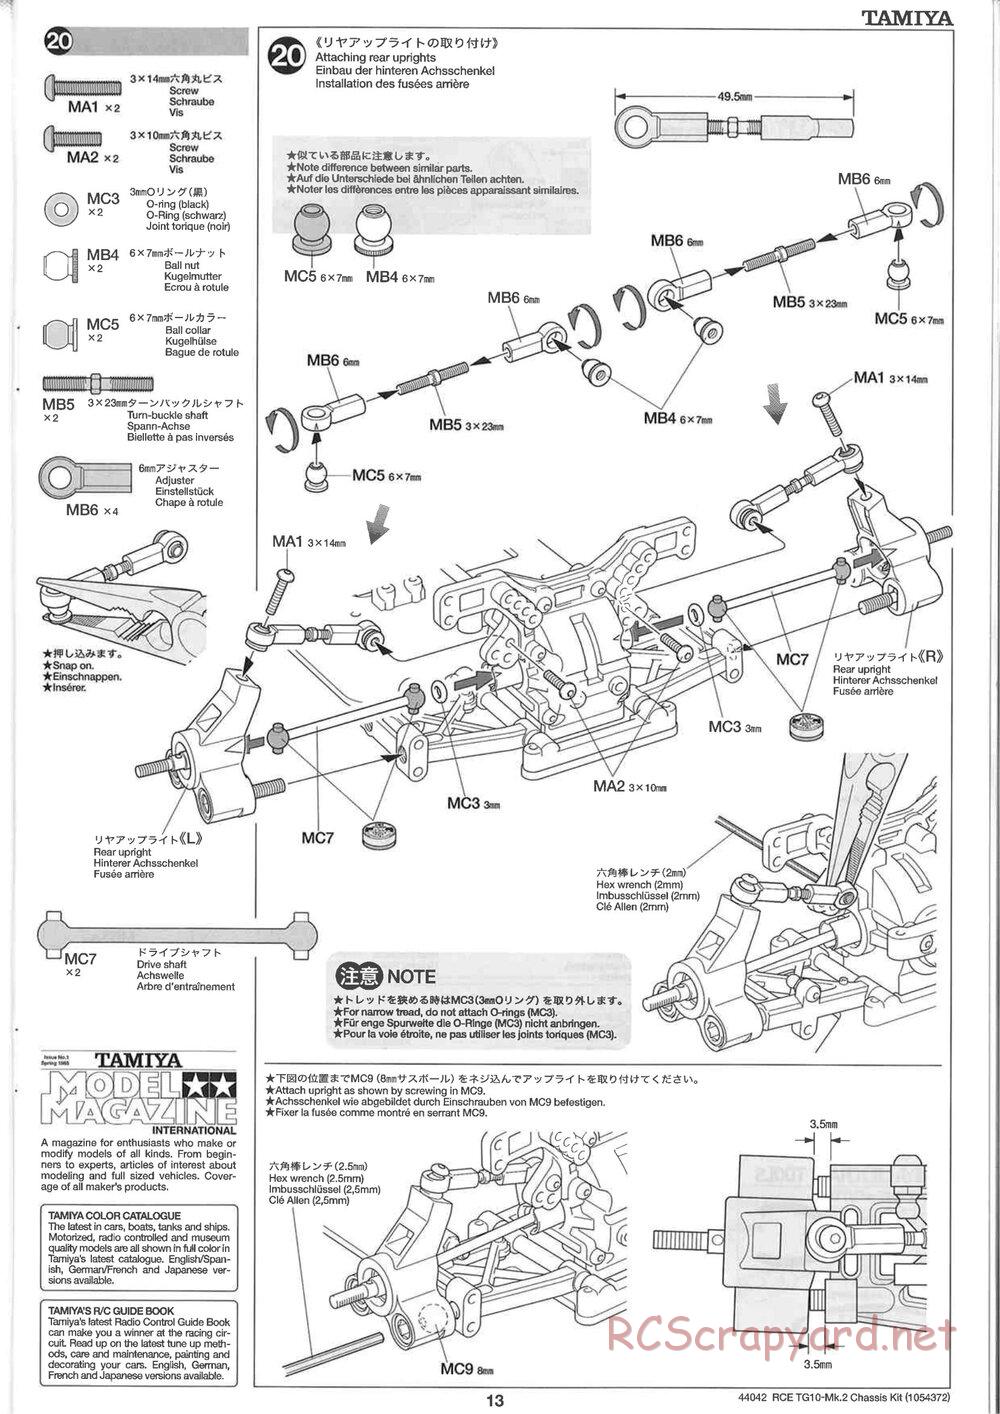 Tamiya - TG10 Mk.2 Chassis - Manual - Page 13